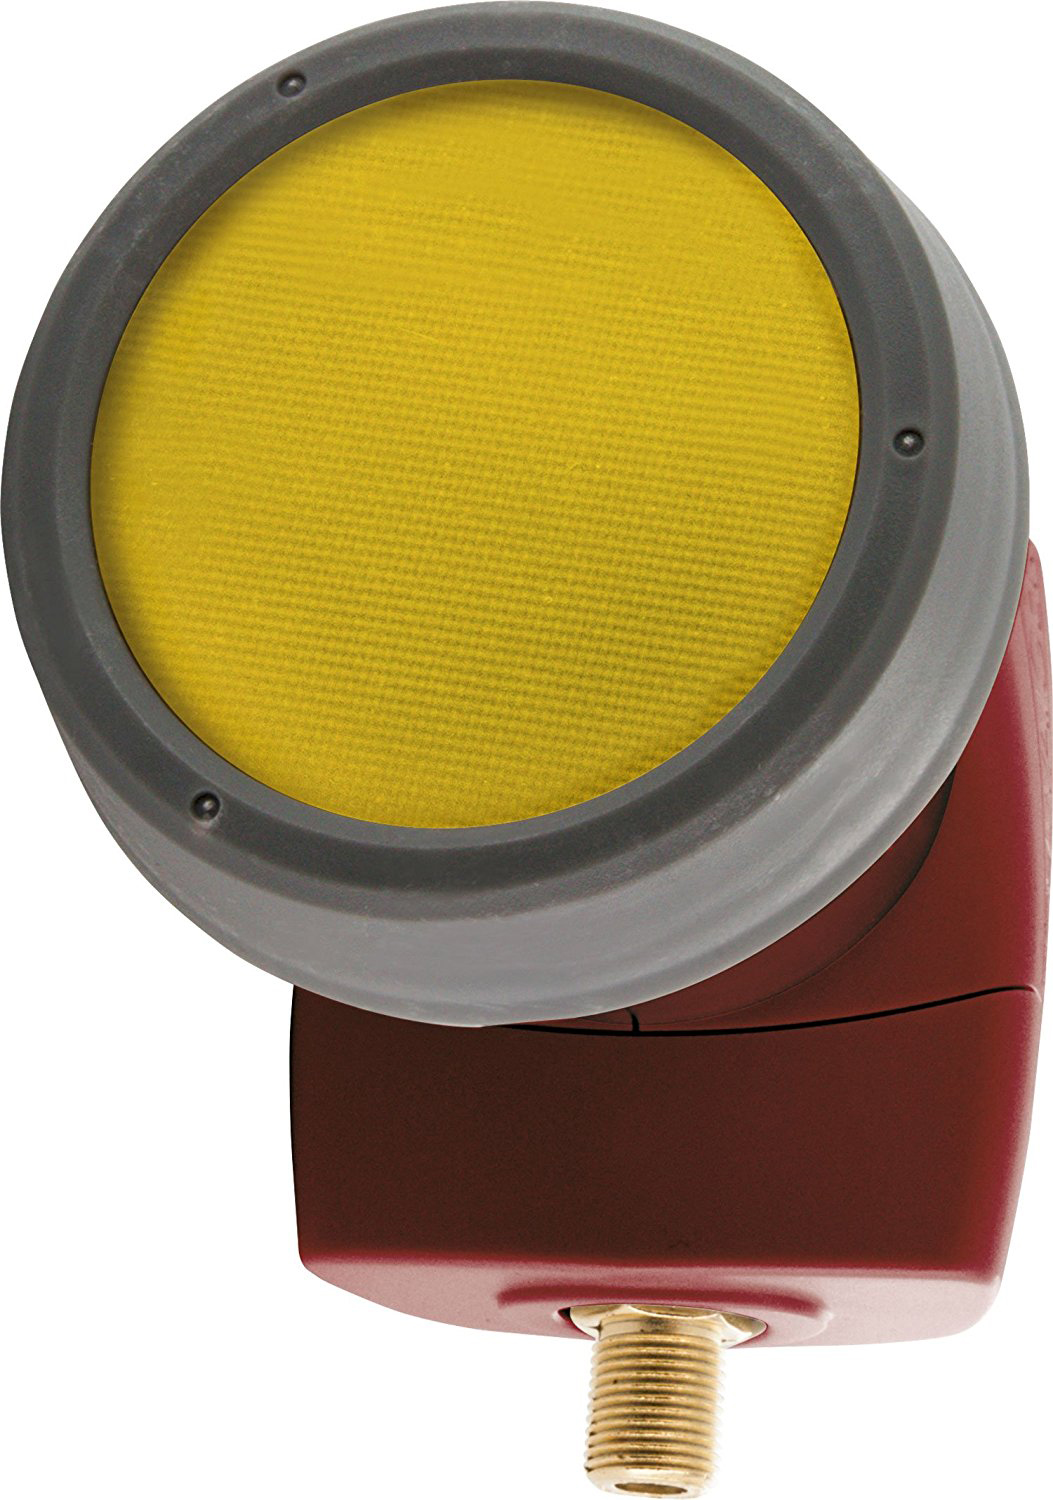 SCHWAIGER -SPS6810R 511- SUN PROTECT Single - vergoldeten mit LNB Digitales Anschlüssen